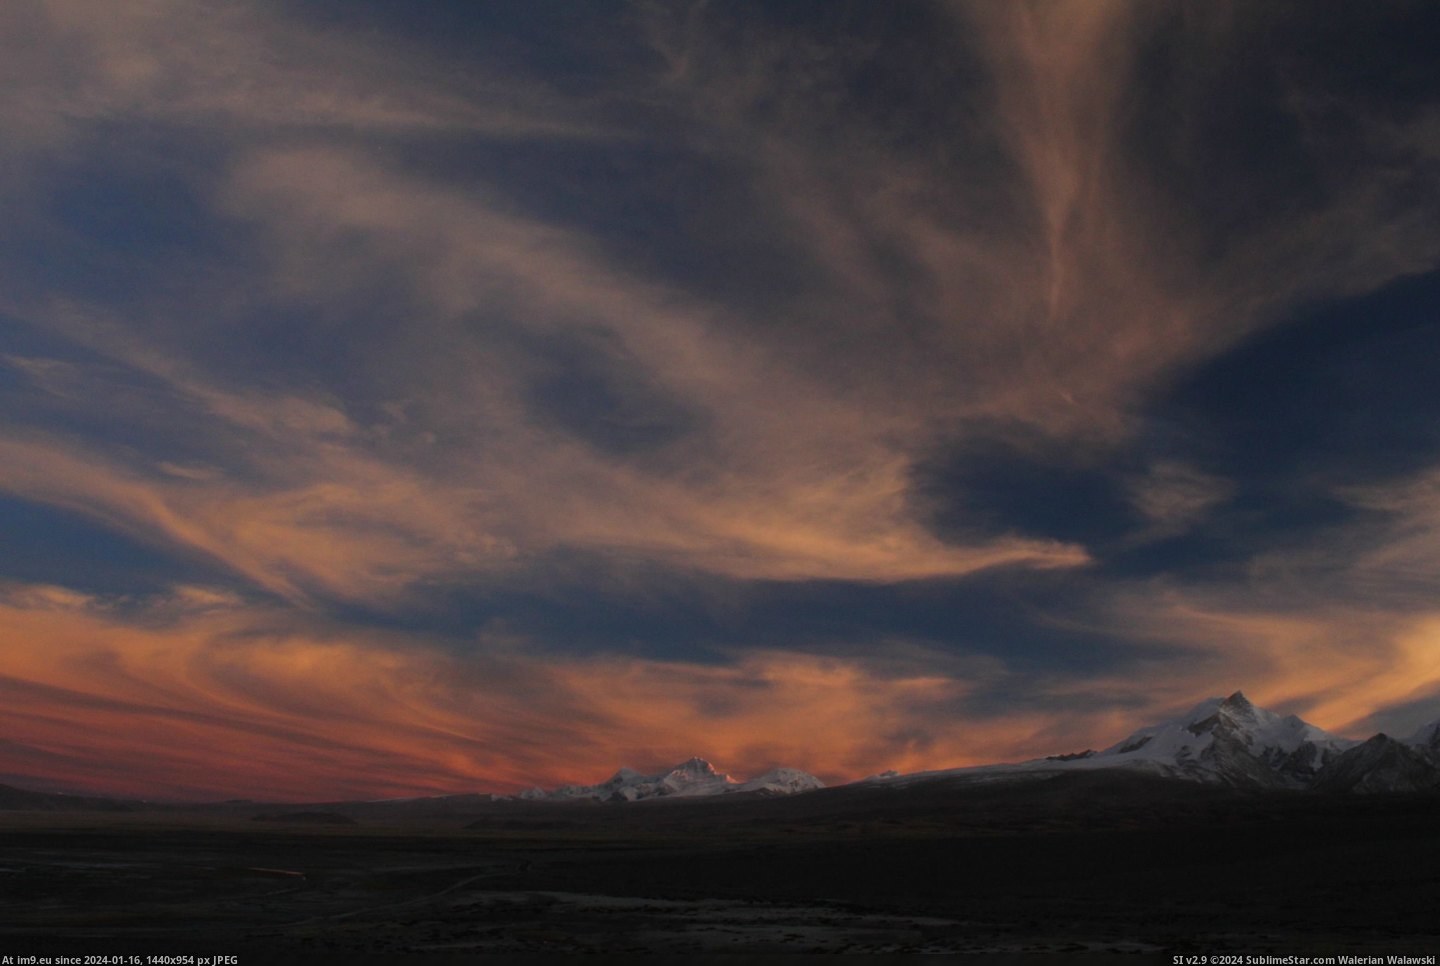 #Sunset #Clouds #3456x2304 #Himalayas #Tibet #Shaped #Phoenix [Earthporn] Sunset and phoenix shaped clouds over the Himalayas, Tibet[3456x2304] Pic. (Obraz z album My r/EARTHPORN favs))